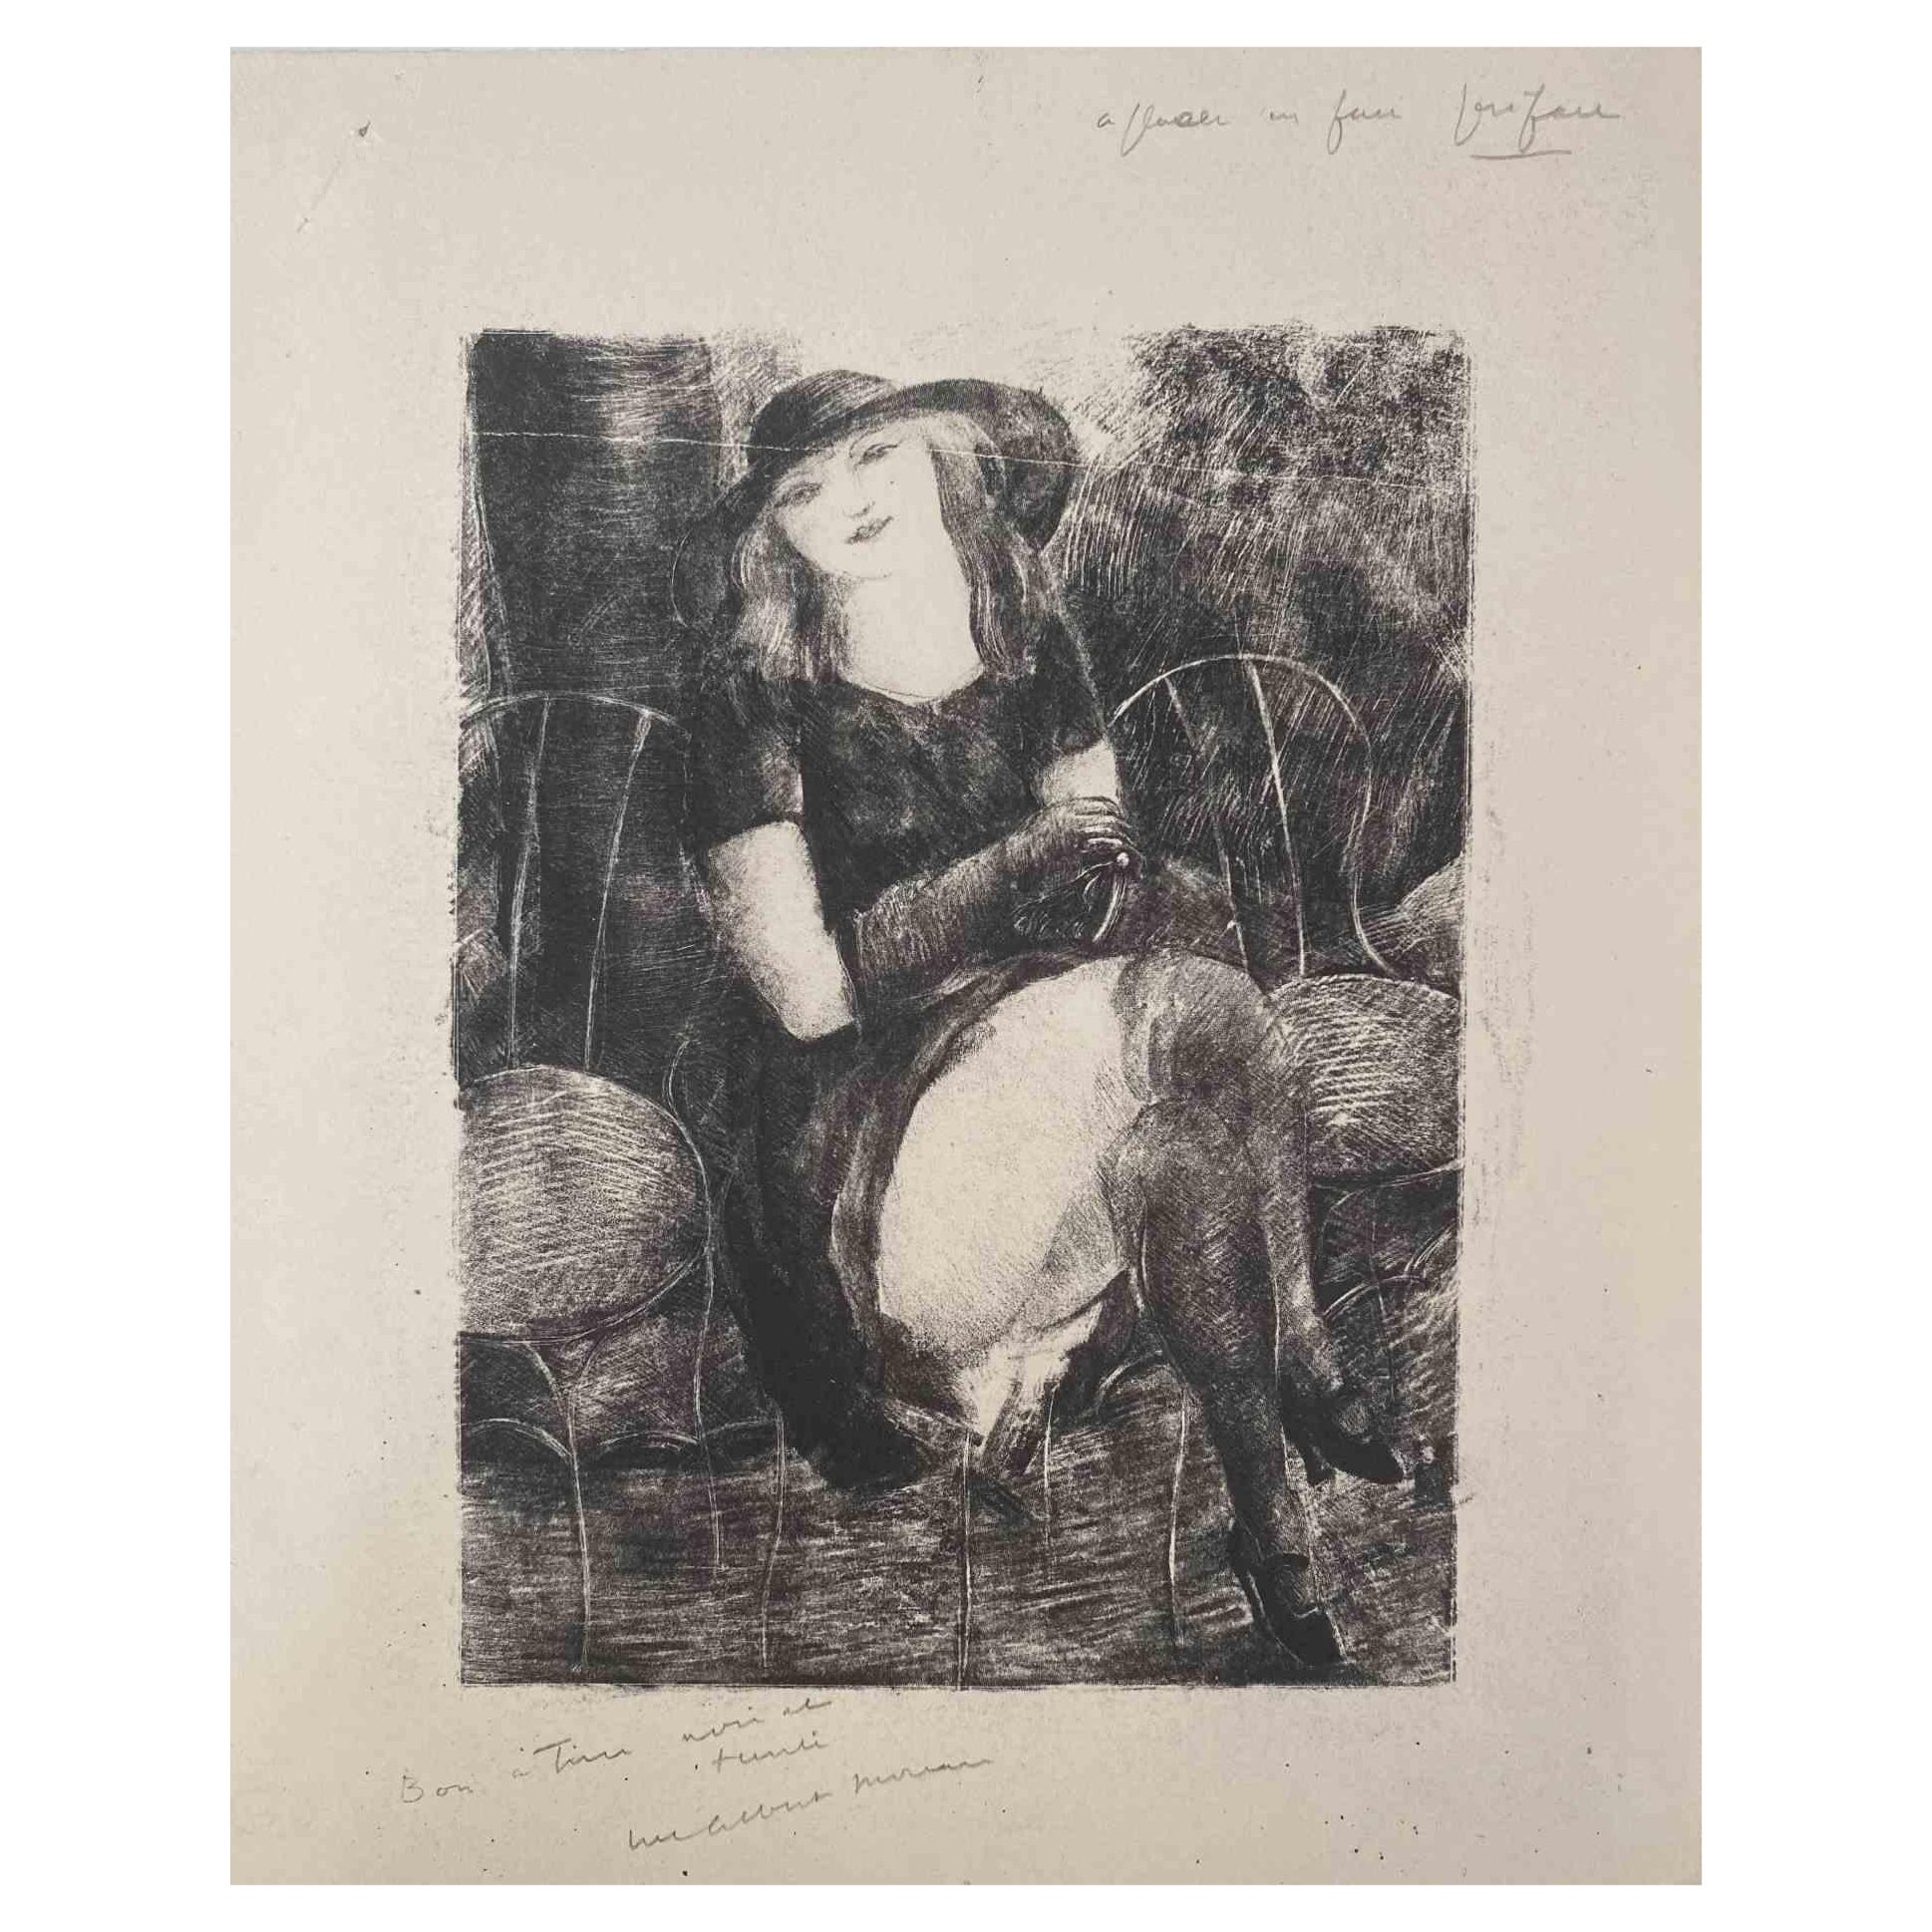 Lady in Saloon ist eine Original Lithographie auf elfenbeinfarbenem Papier von Luc Albert Moreau.

Das Kunstwerk ist in gutem Zustand.

Handsigniert auf der Unterseite. 

Luc-Albert Moreau (1882-1948) ist ein französischer Maler, Graveur, Lithograf